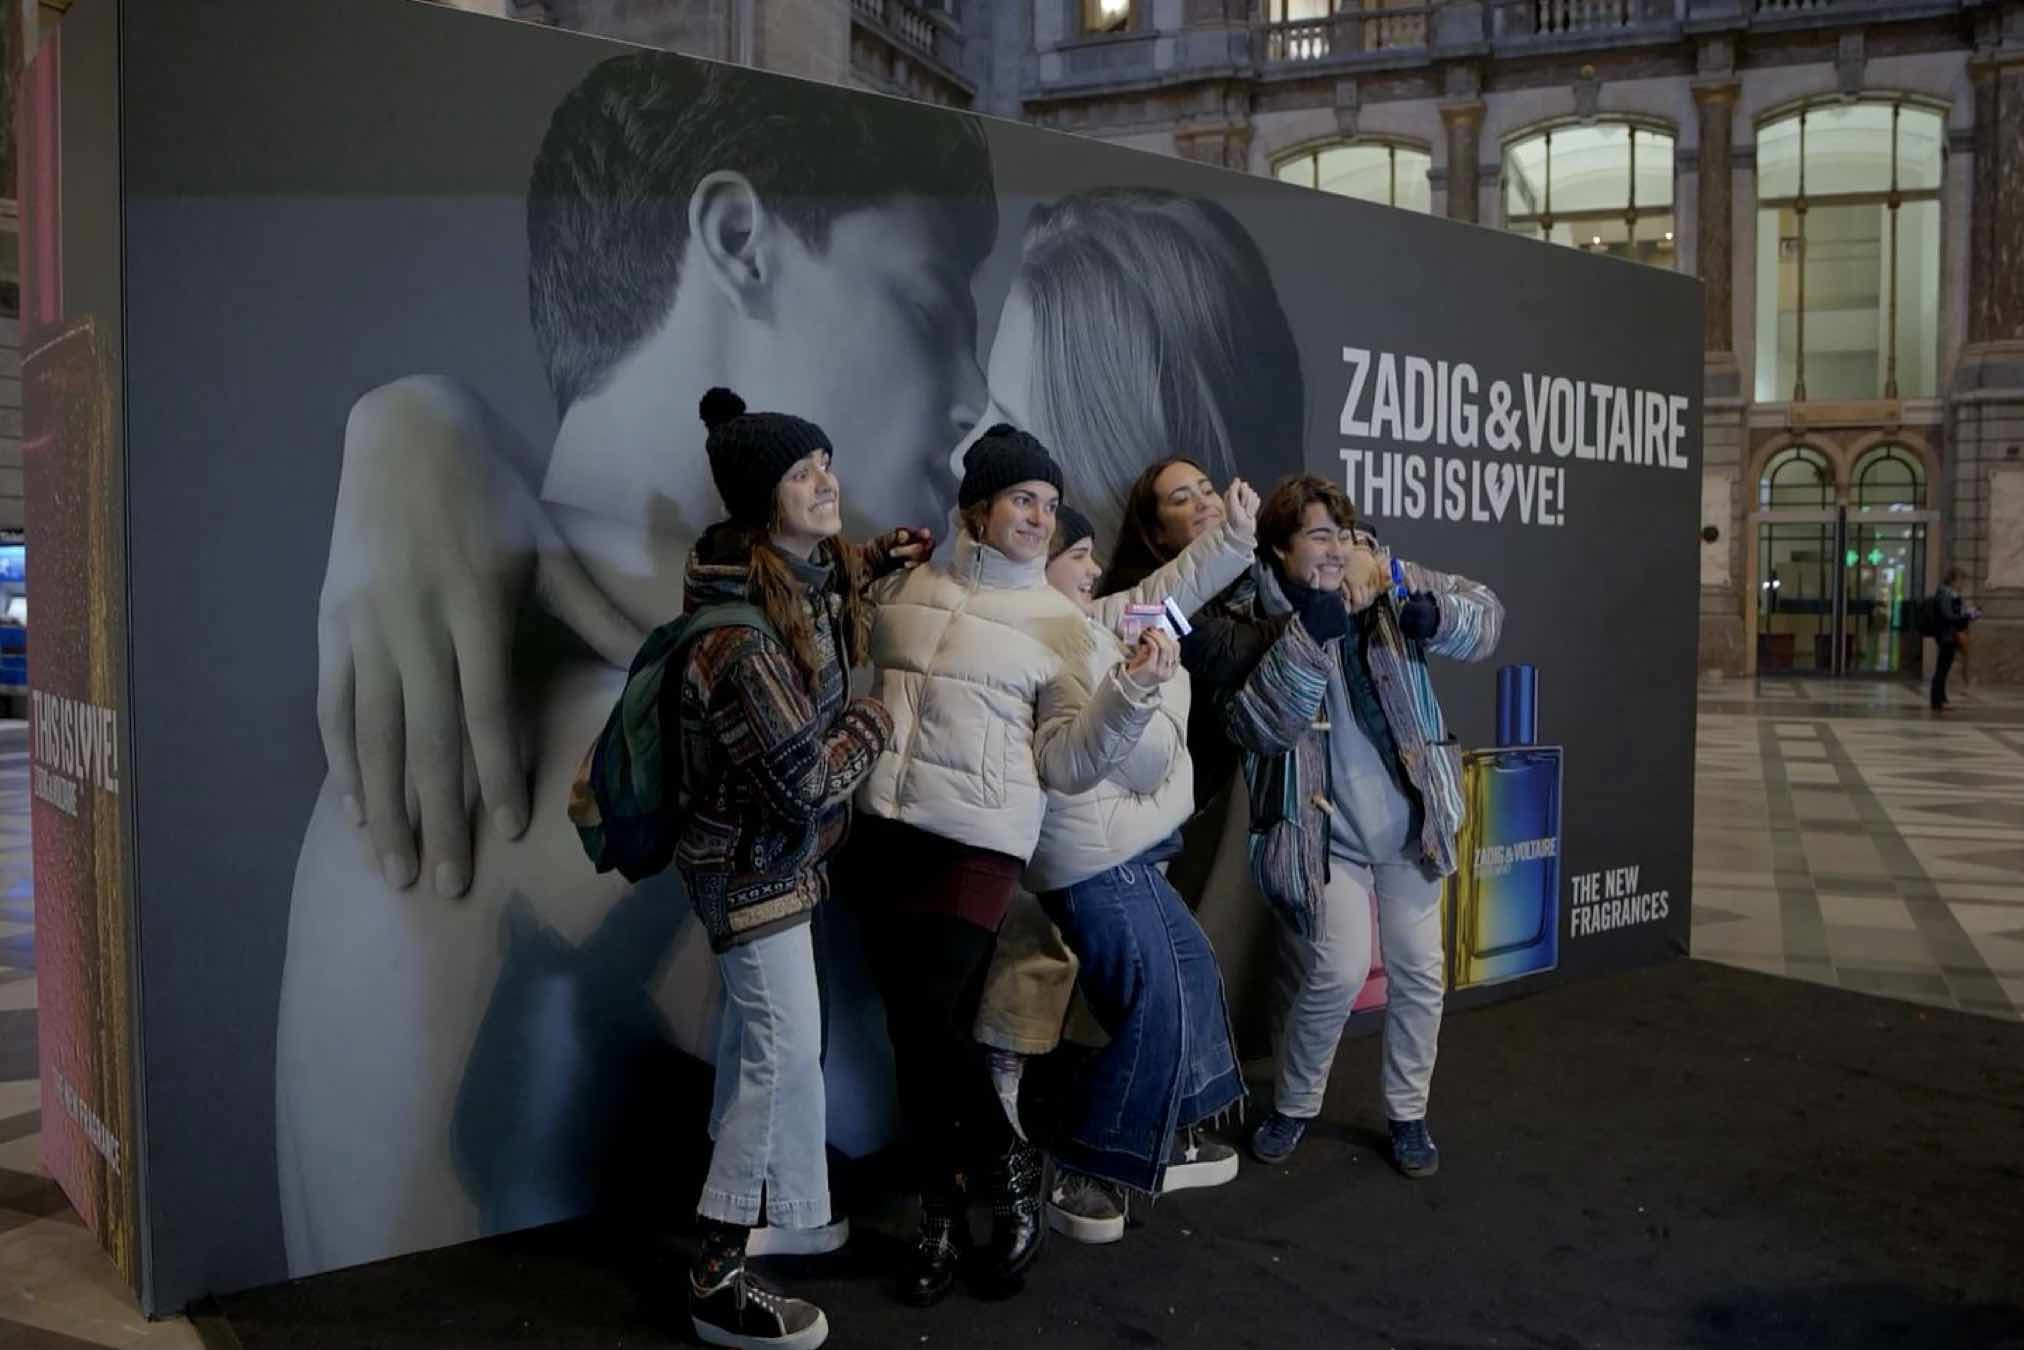 Zadig&Voltaire eert de liefde in Antwerpen-Centraal